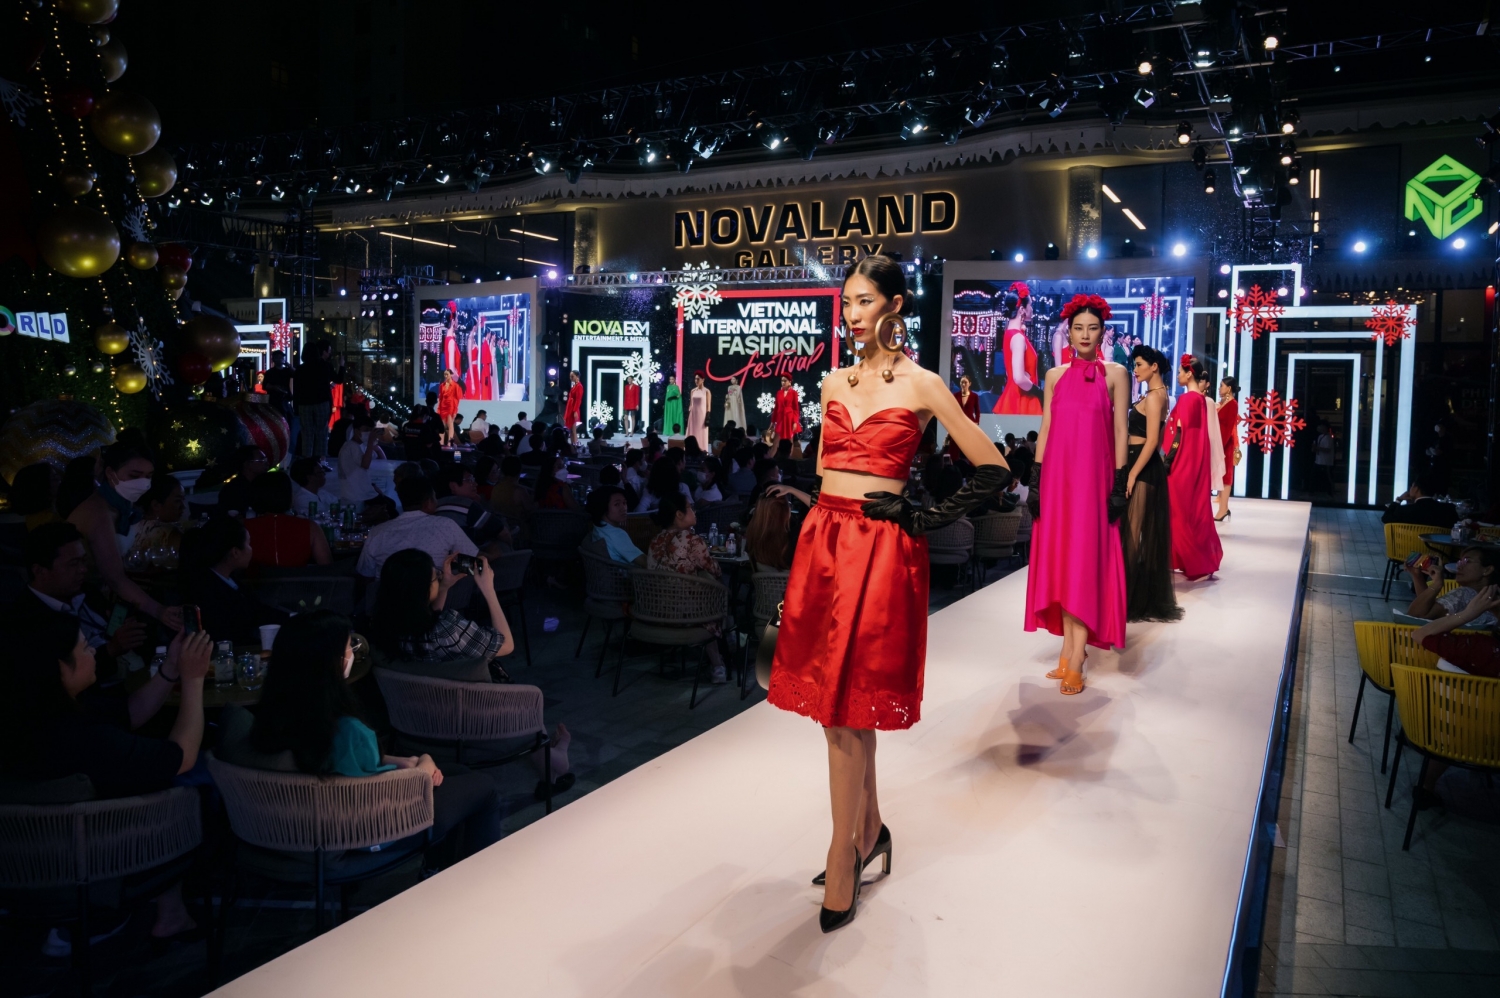 Bế mạc chuỗi hoạt động của Vietnam International Fashion Festival (VIFF)  2021, diễn ra tại Novaland Gallery